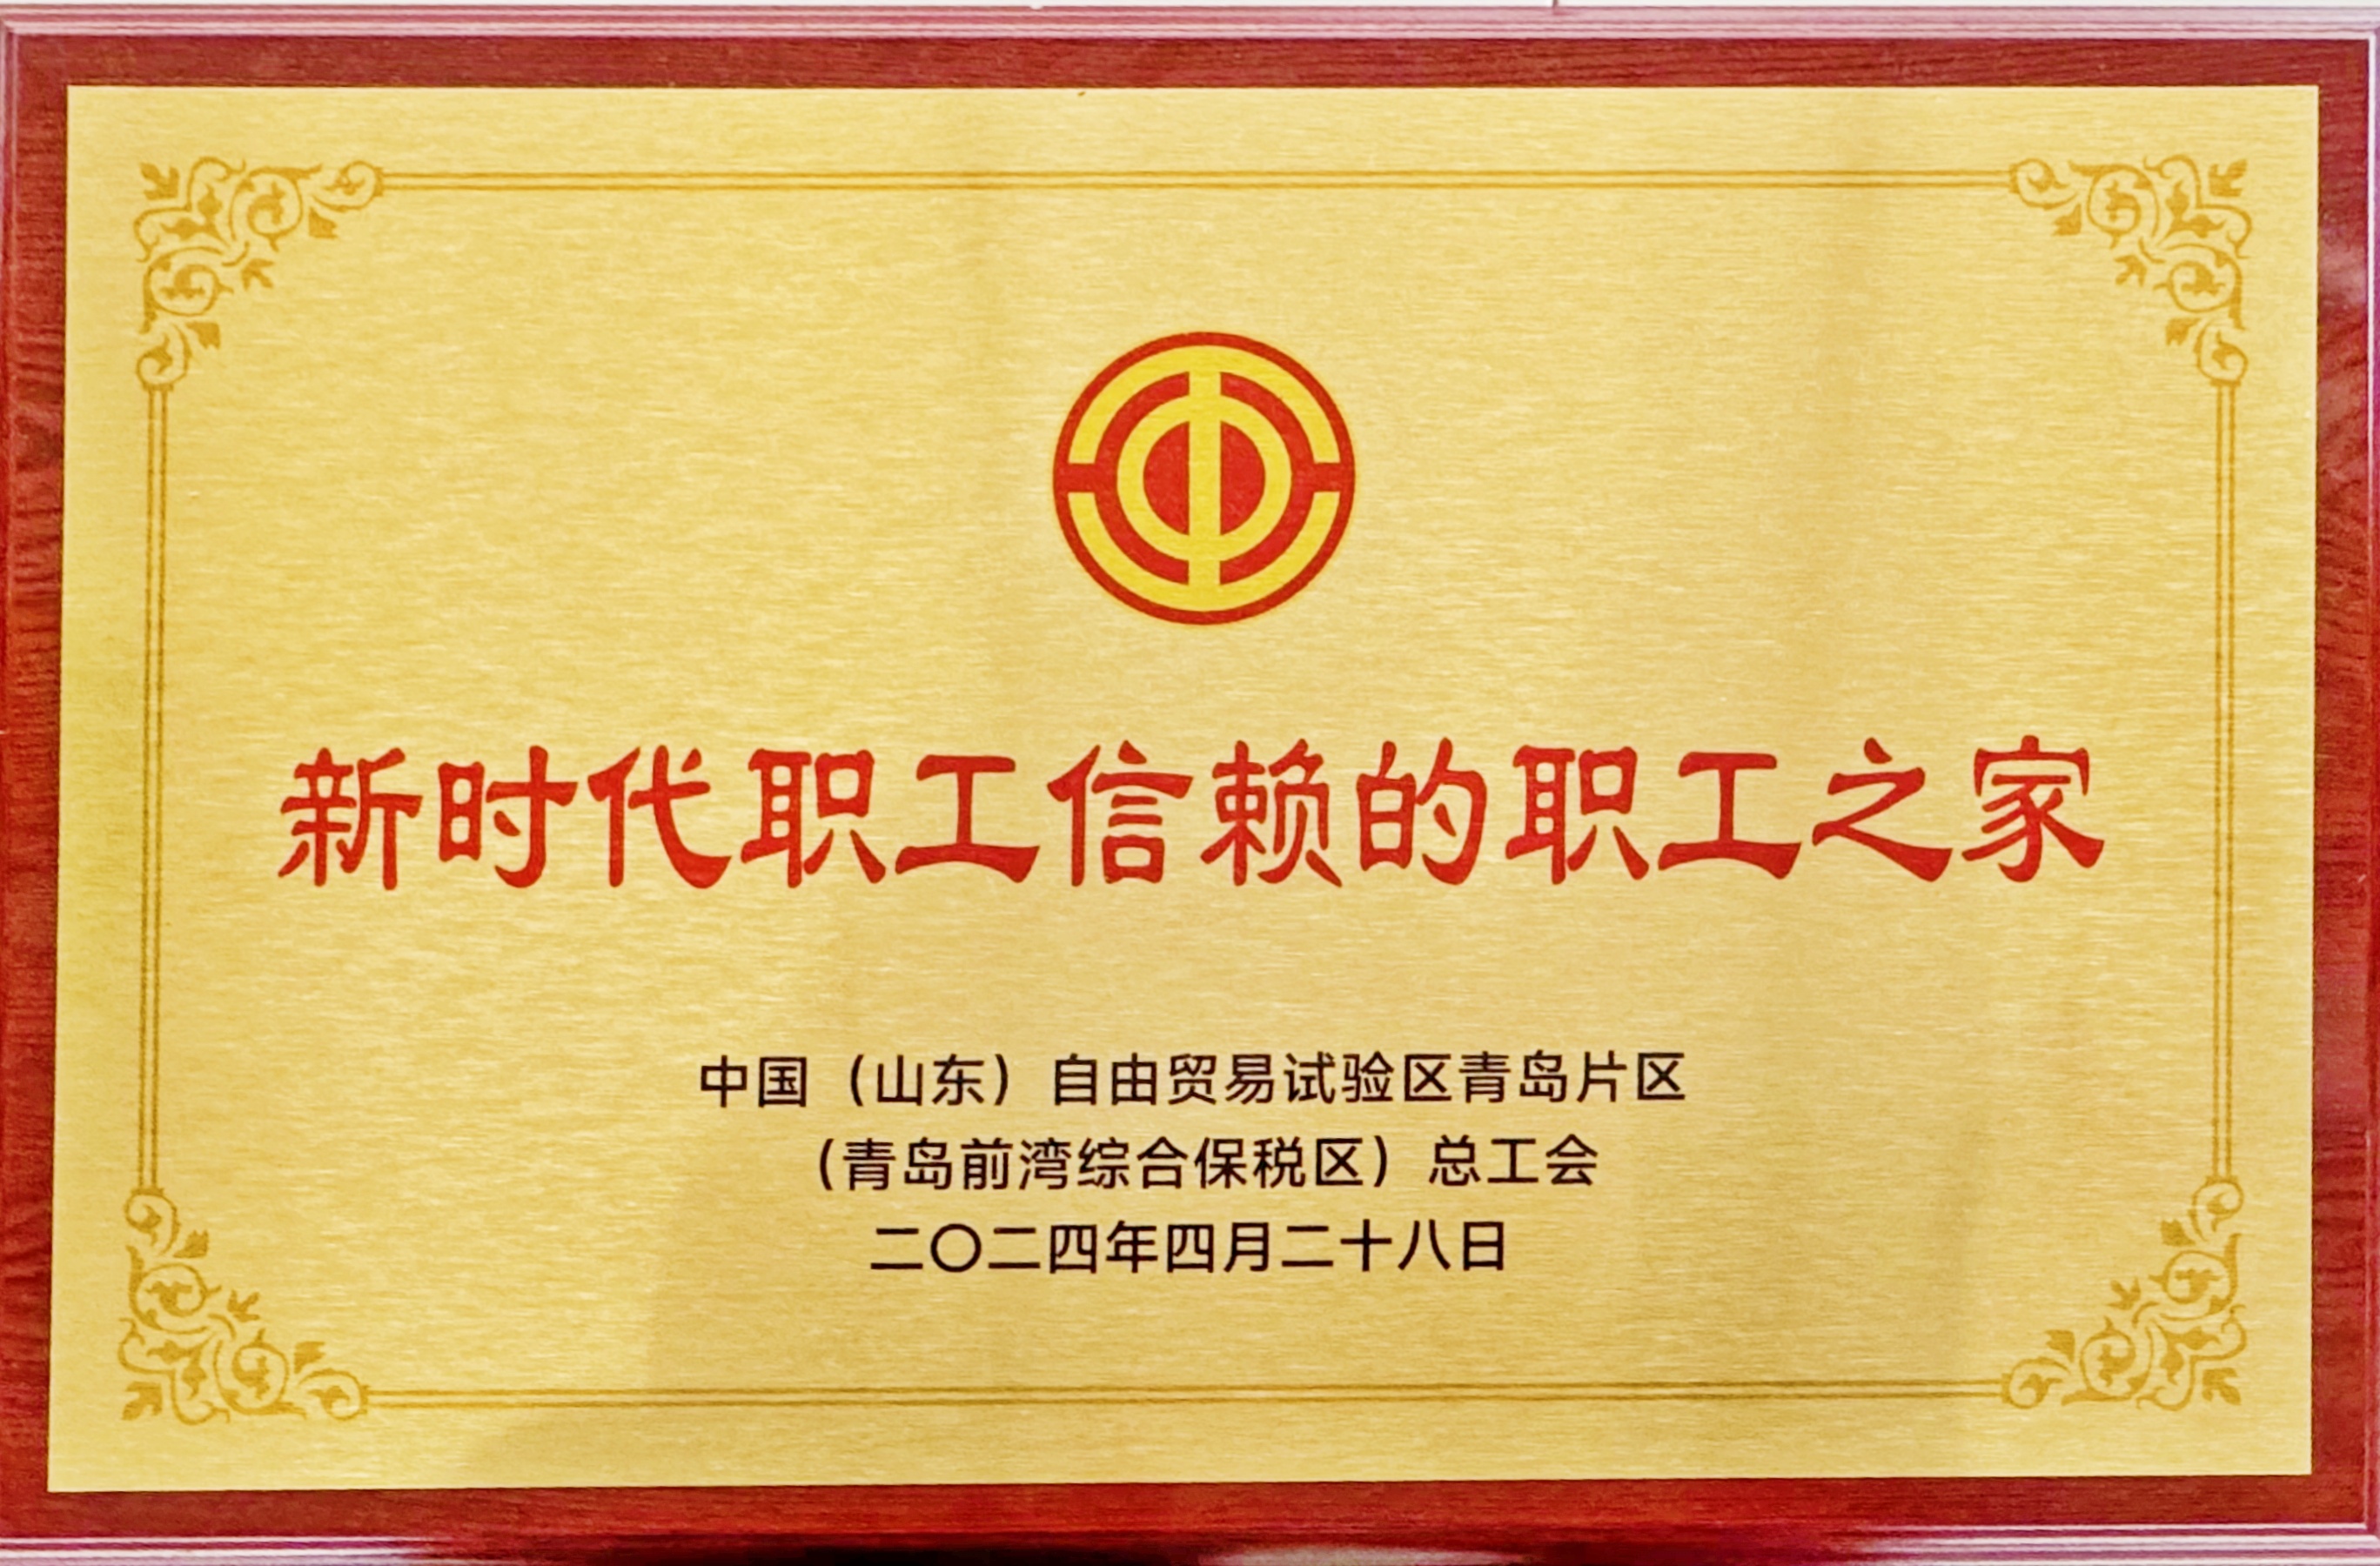 青岛公司工会被青岛自贸片区总工会评为“新时代职工信赖的职工之家”